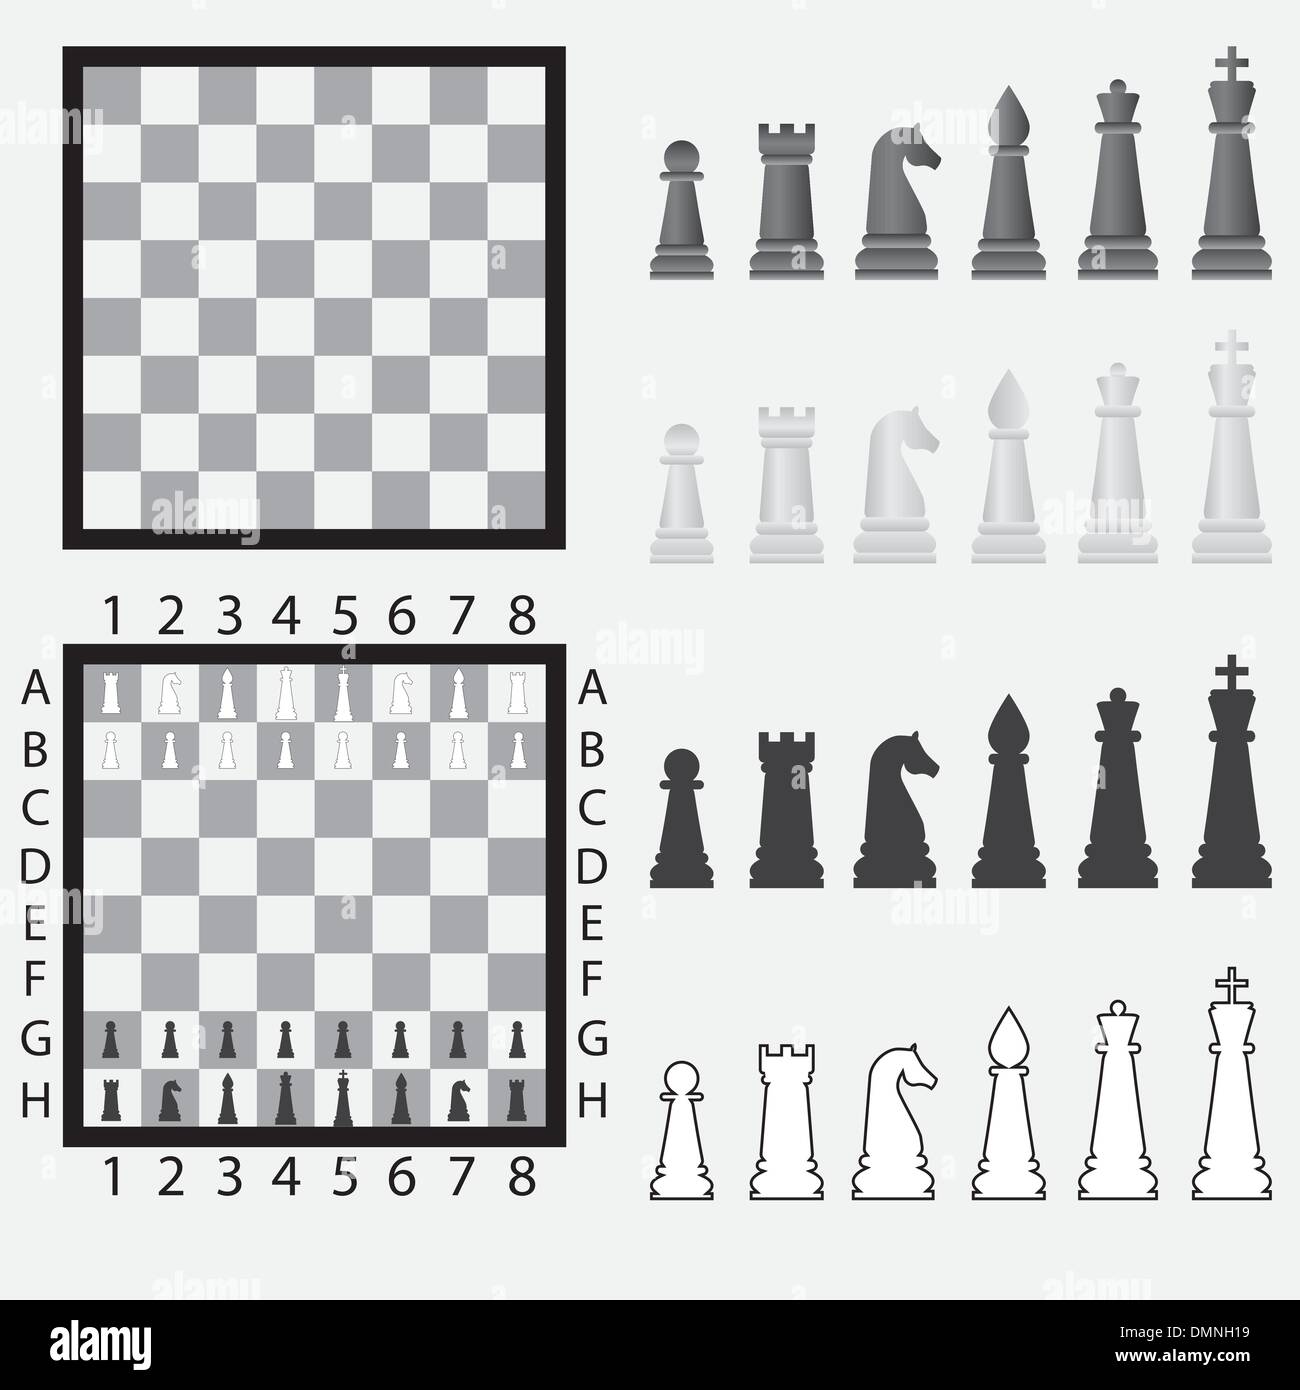 Шахматная доска с фигурами диаграмма